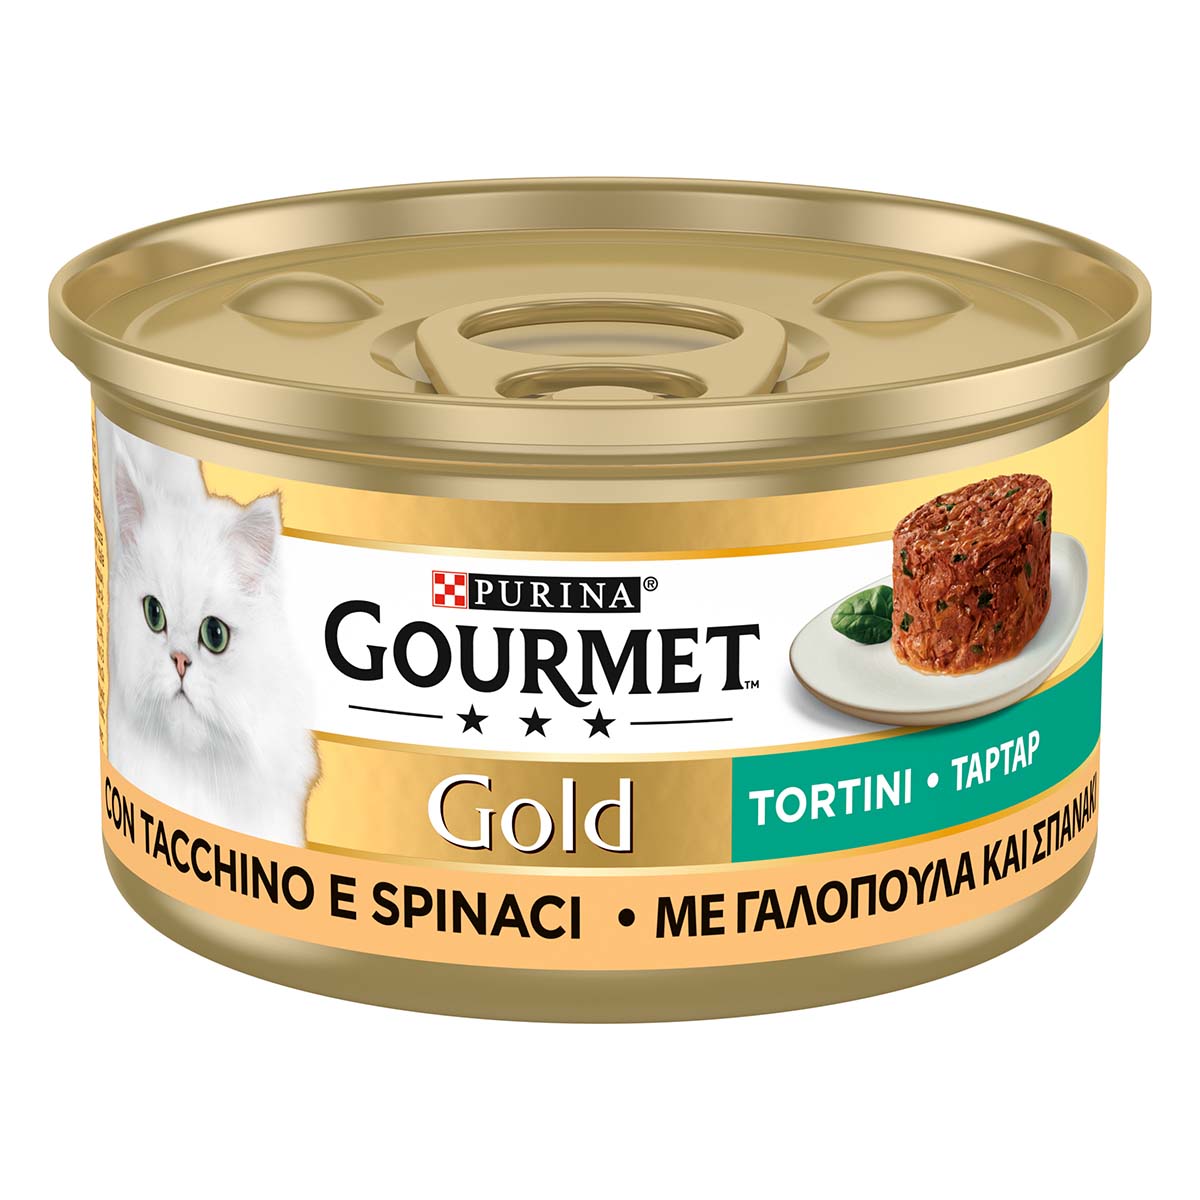 GOLD TORTINI CON Tacchino e spinaci